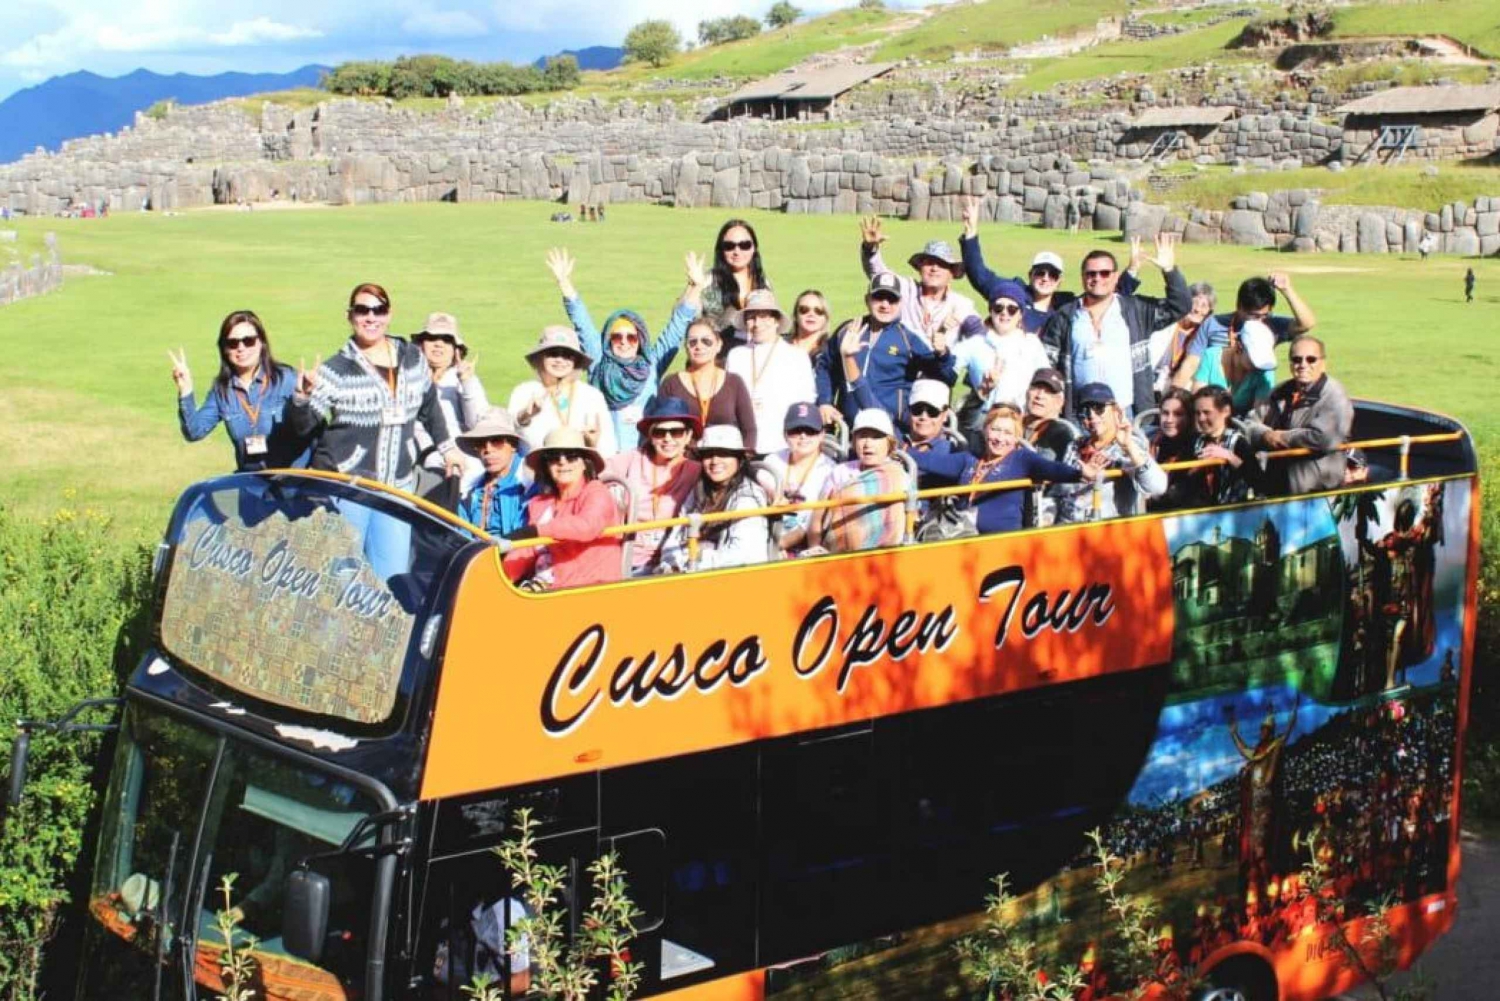 Tour della città di Cusco con Mirabus e vista panoramica.